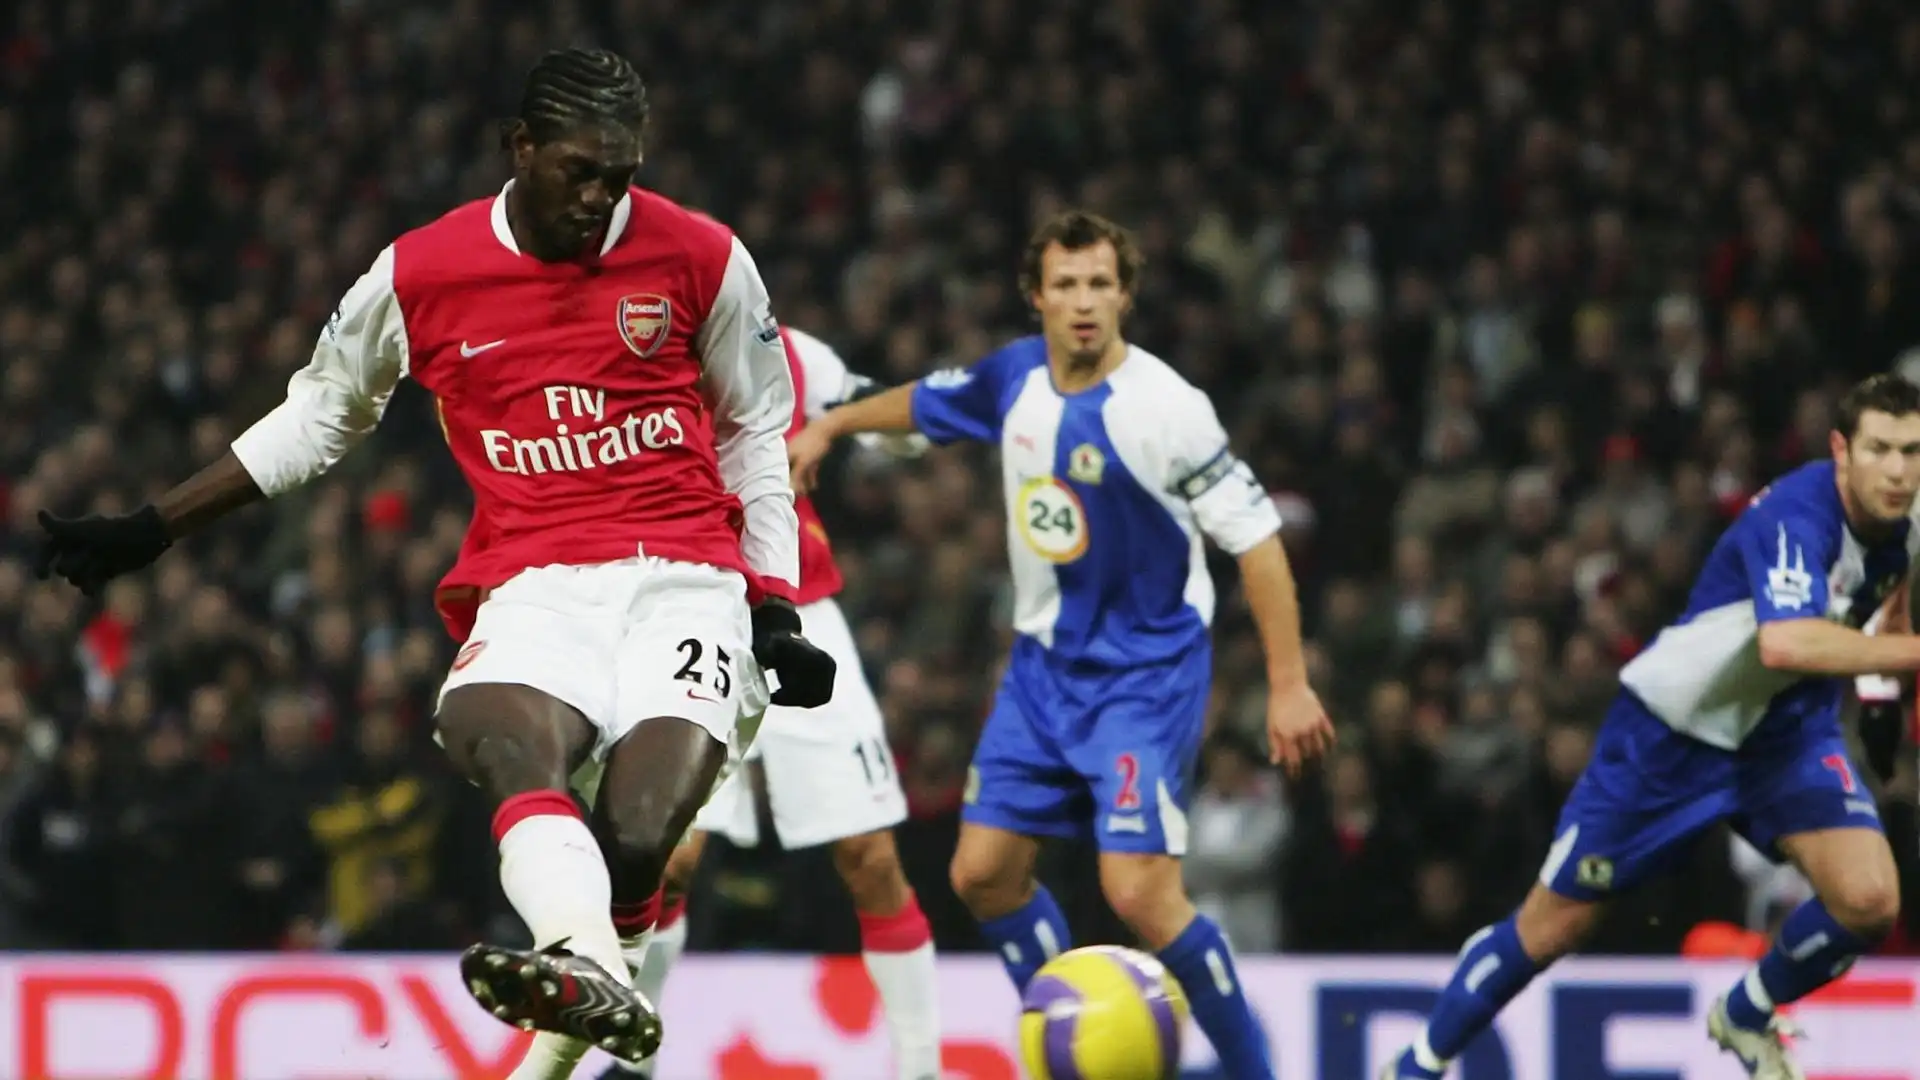 Emmanuel Adebayor (Togo): patrimonio netto 45 milioni di dollari. Per tre anni attaccante dell'Arsenal, miglior marcatore della storia del Togo.